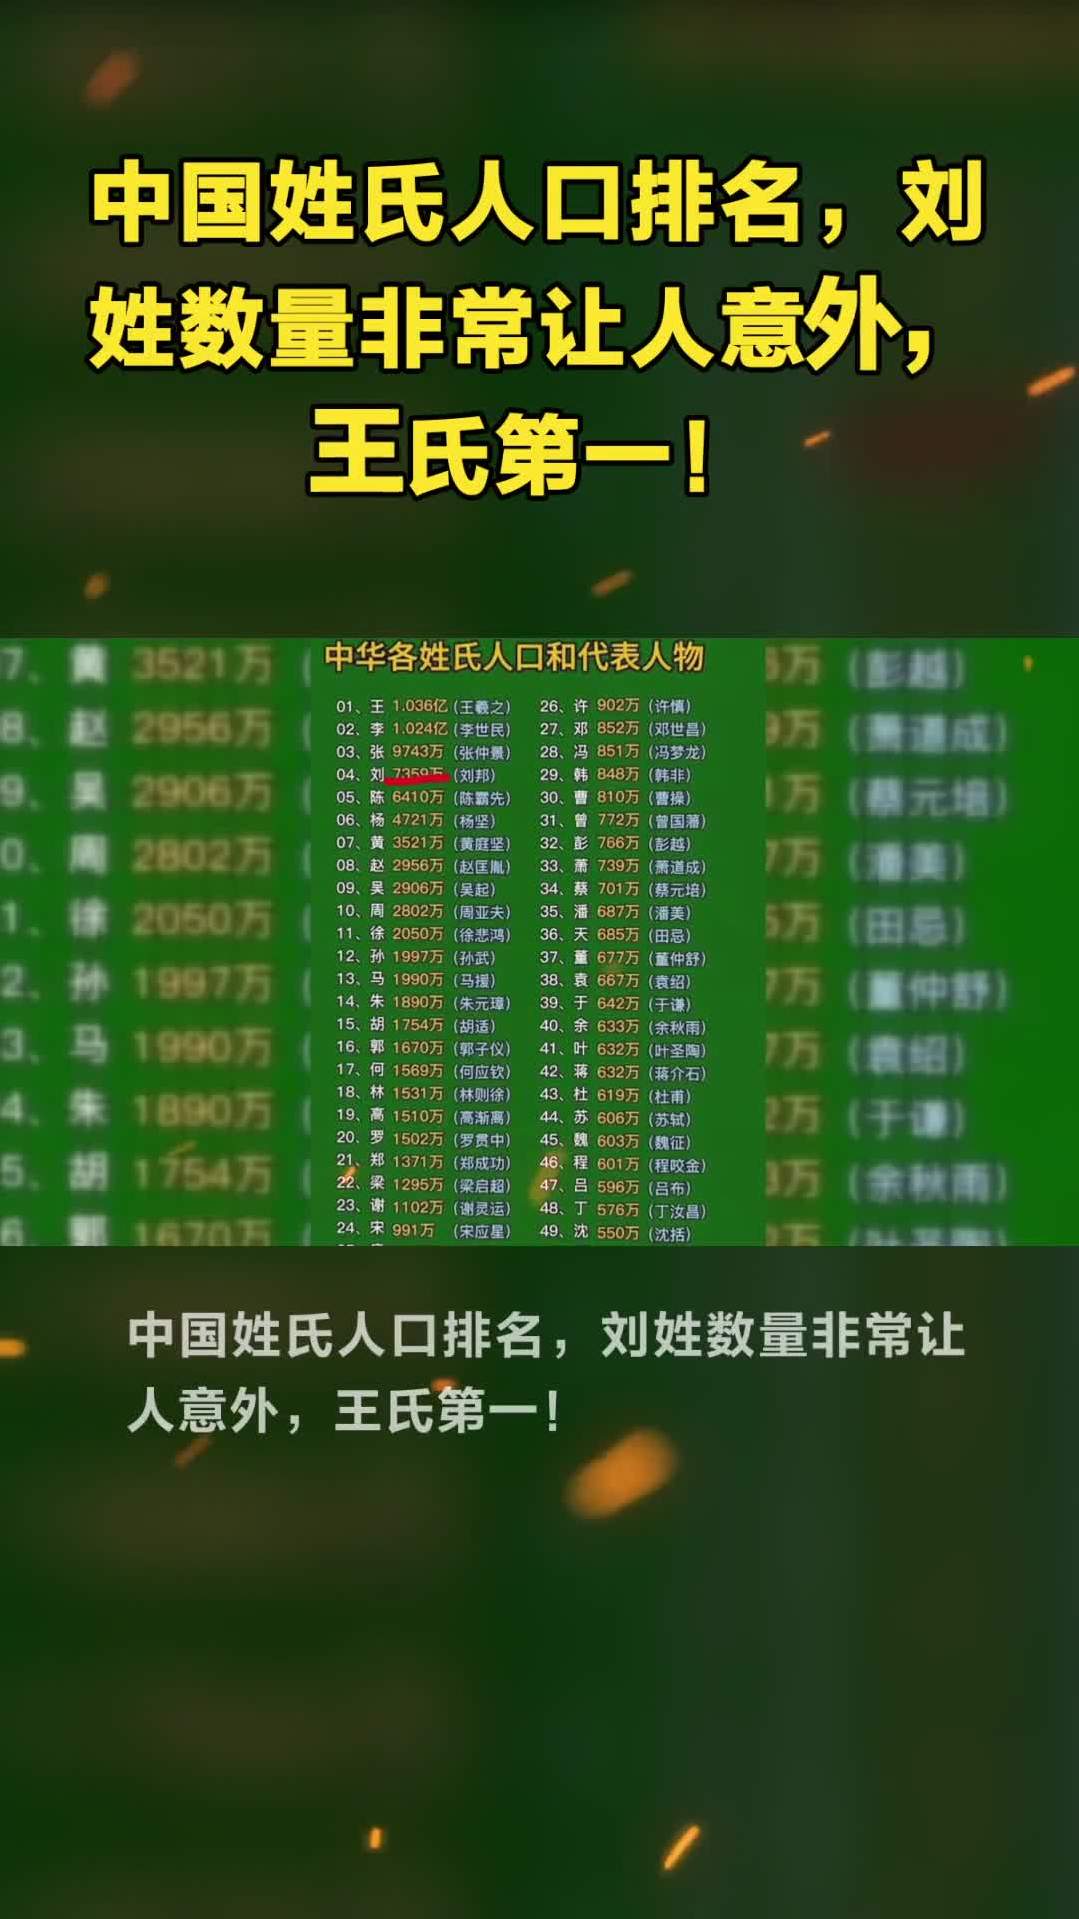 中国姓氏人口排名,刘姓数量非常让人意外,王氏第一!